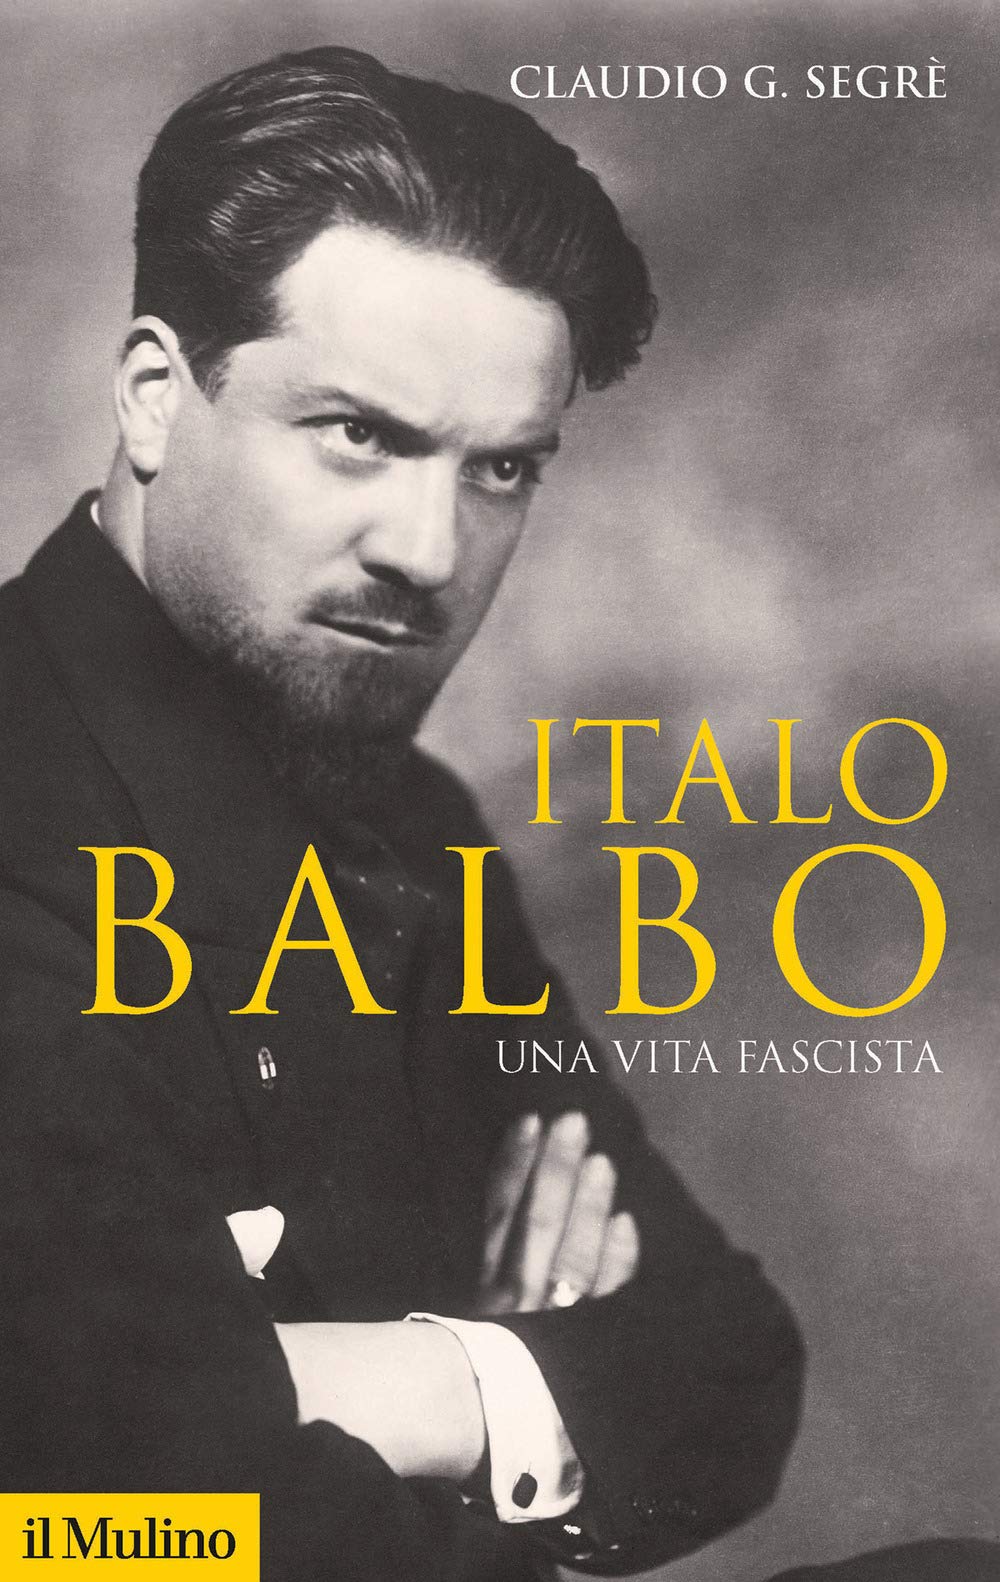 Recensione di Italo Balbo – Claudio G. Segrè